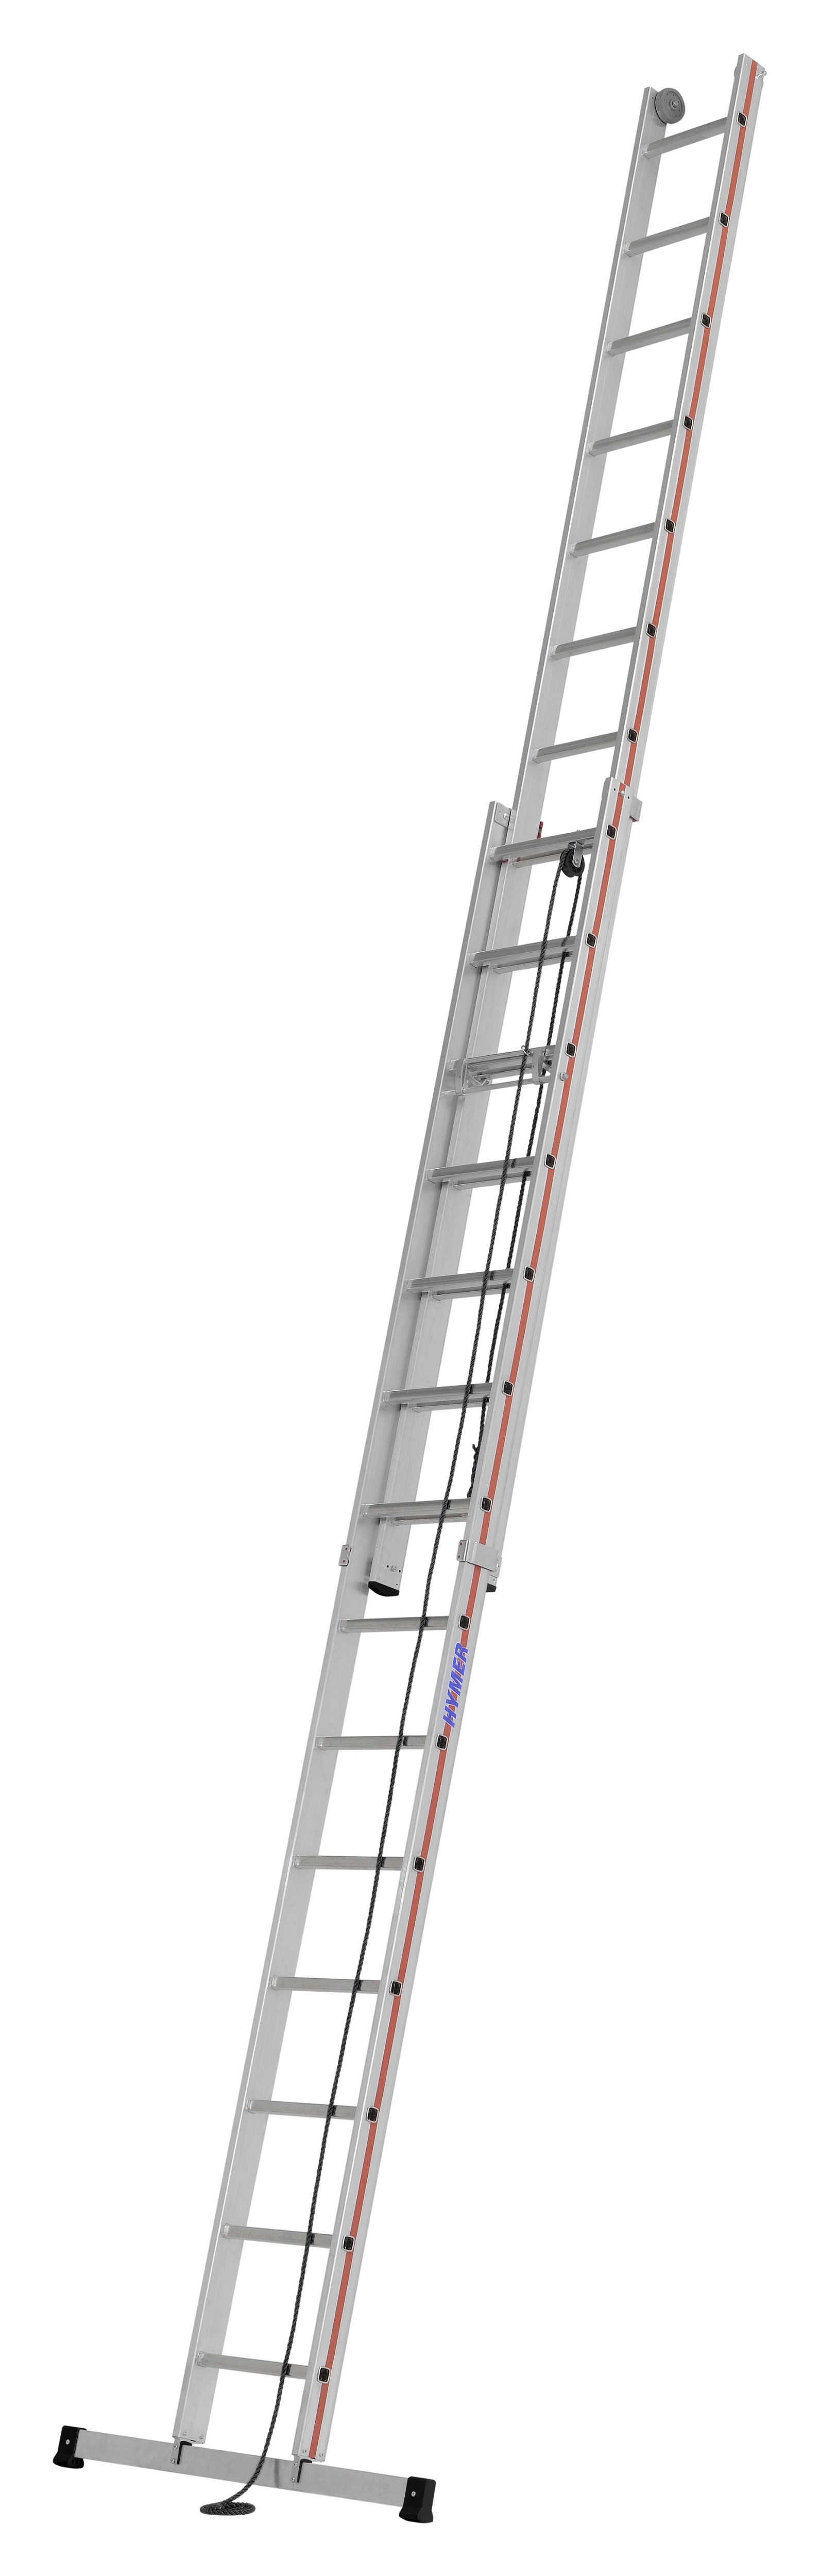 Seilzugleiter, zweiteilig - 2x14 Sprossen/Stufen